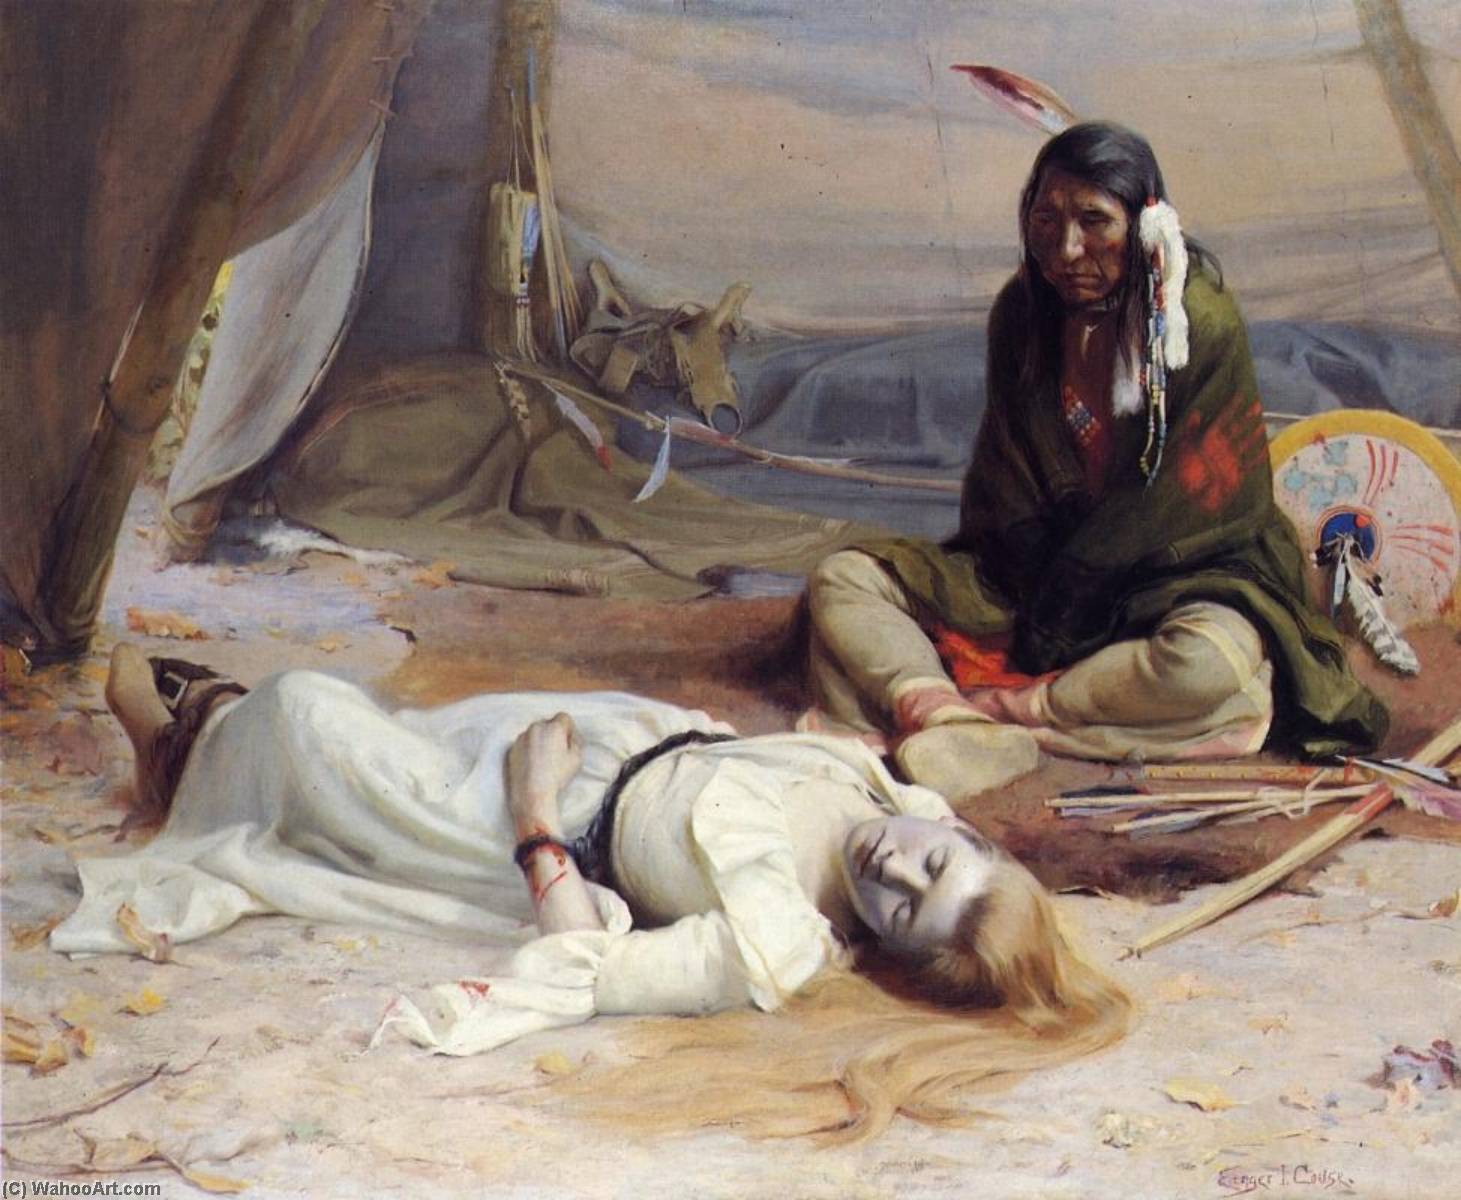 Терпи рабыня. Маковский болгарские мученицы. "Болгарские мученицы" 1877. Насилие в живописи.